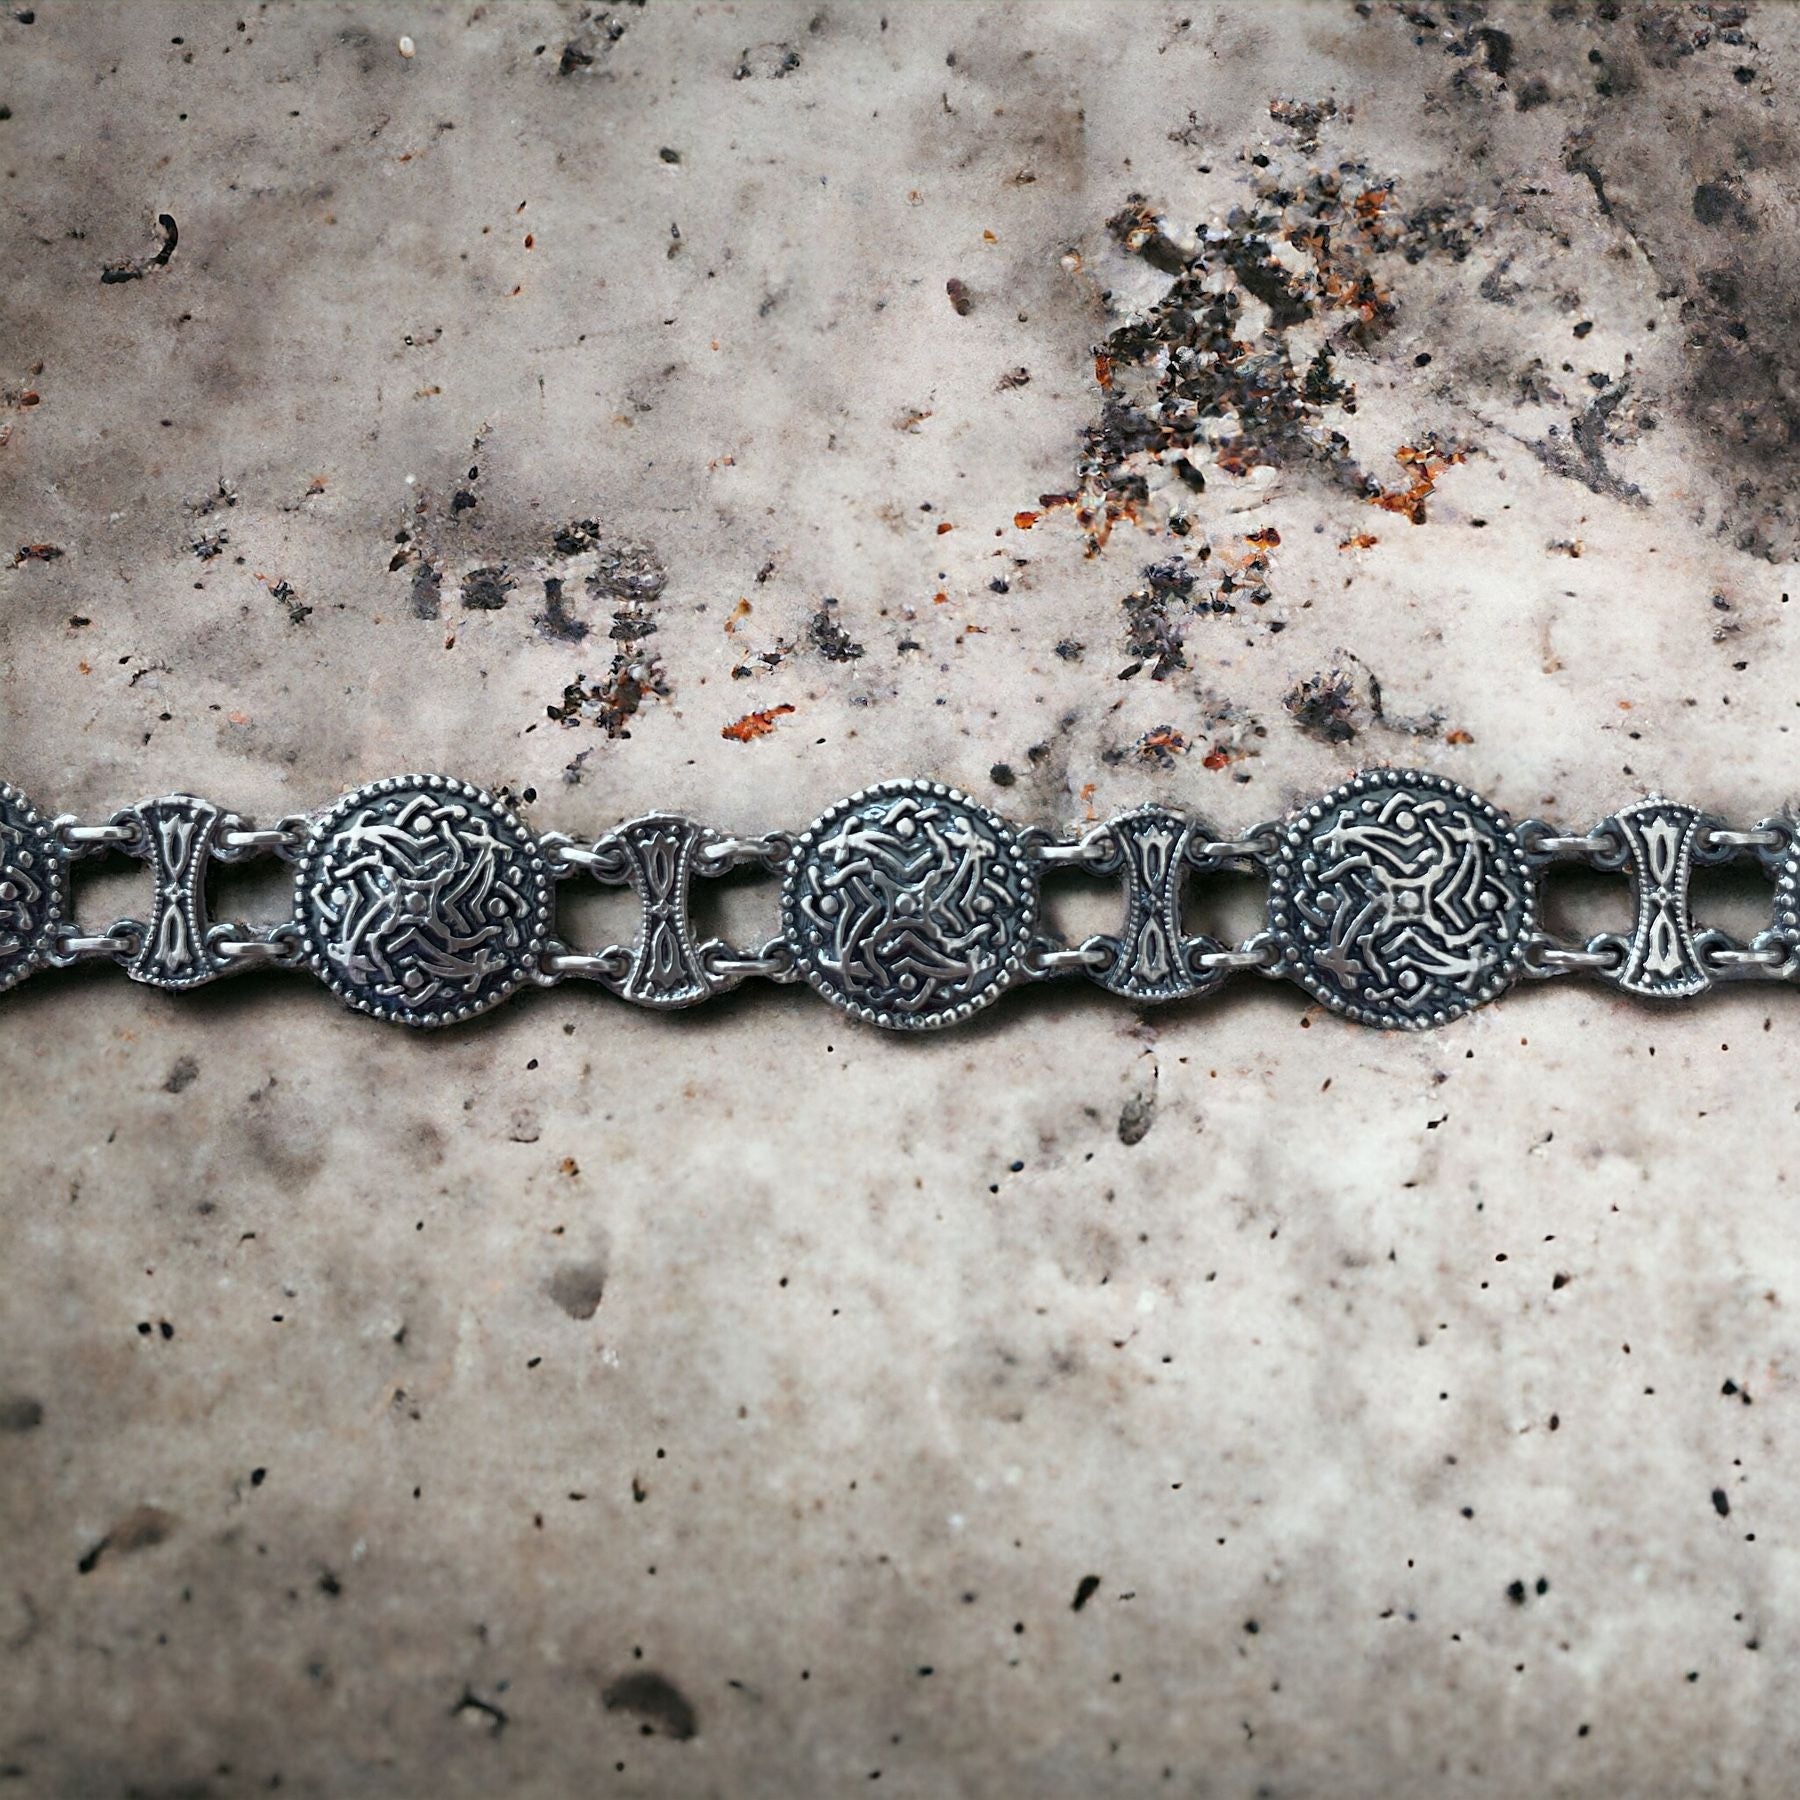 Tir Bracelet by Carisma Jewelry